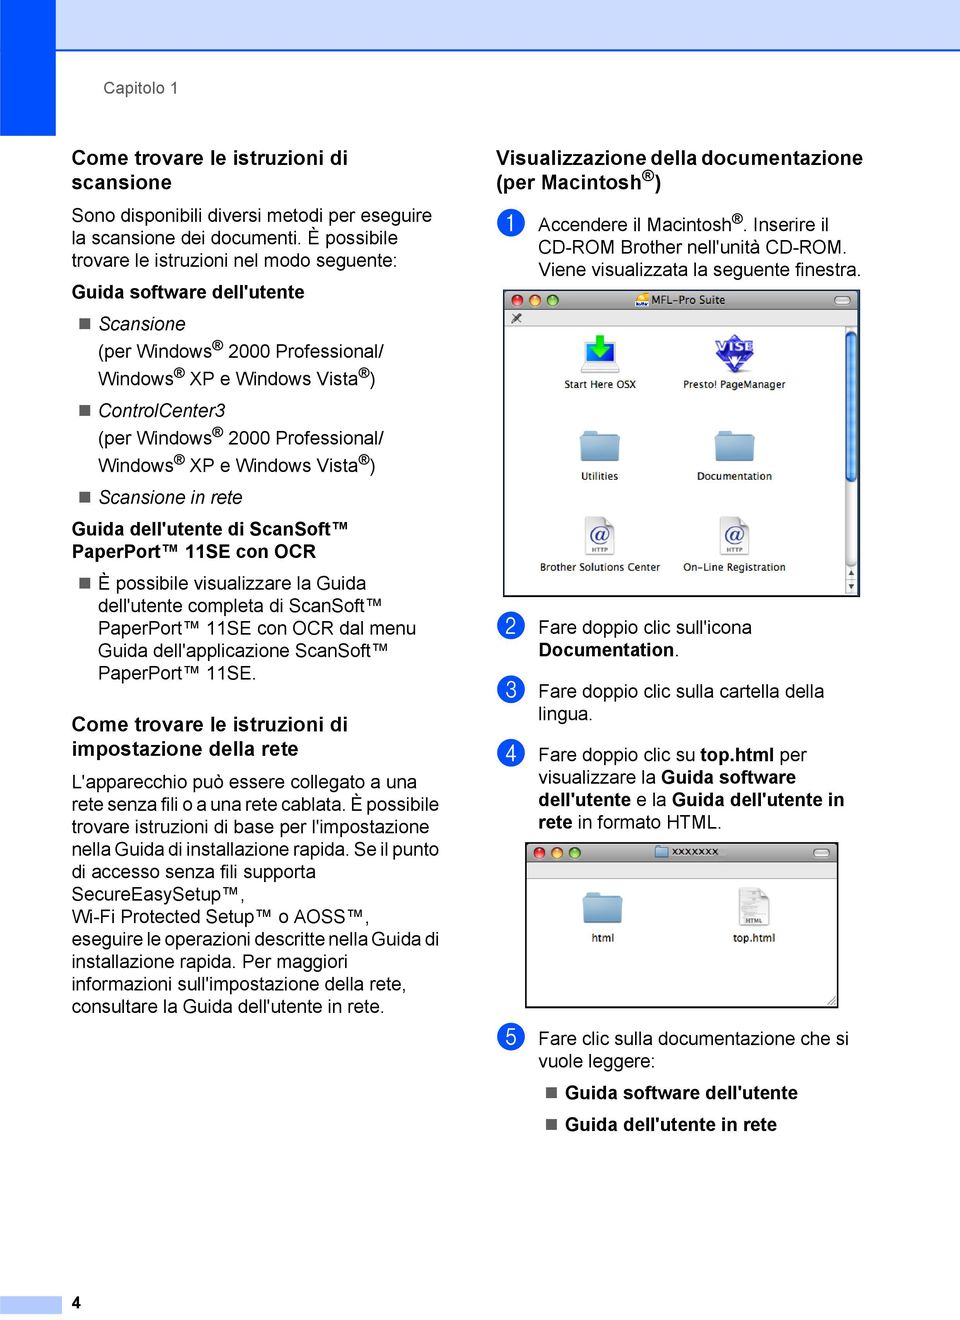 Windows XP e Windows Vista ) Scansione in rete Guida dell'utente di ScanSoft PaperPort 11SE con OCR È possibile visualizzare la Guida dell'utente completa di ScanSoft PaperPort 11SE con OCR dal menu